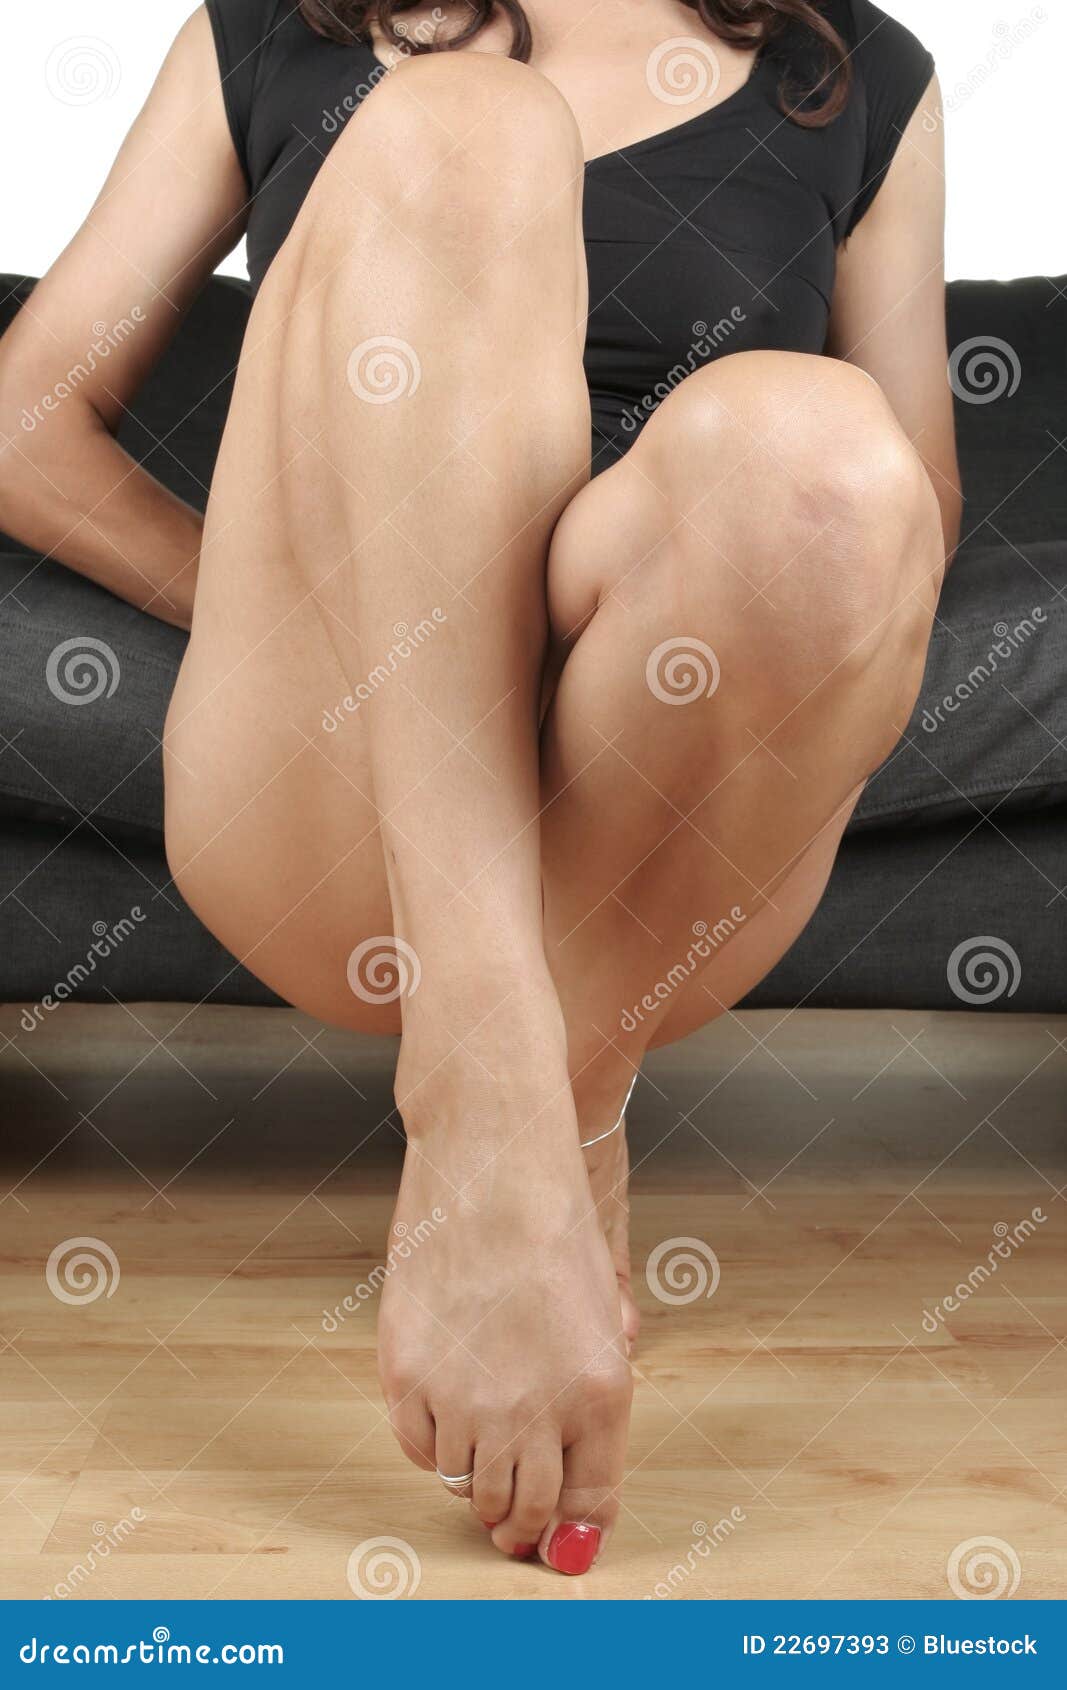 эротика сидят нога на ногу фото 118